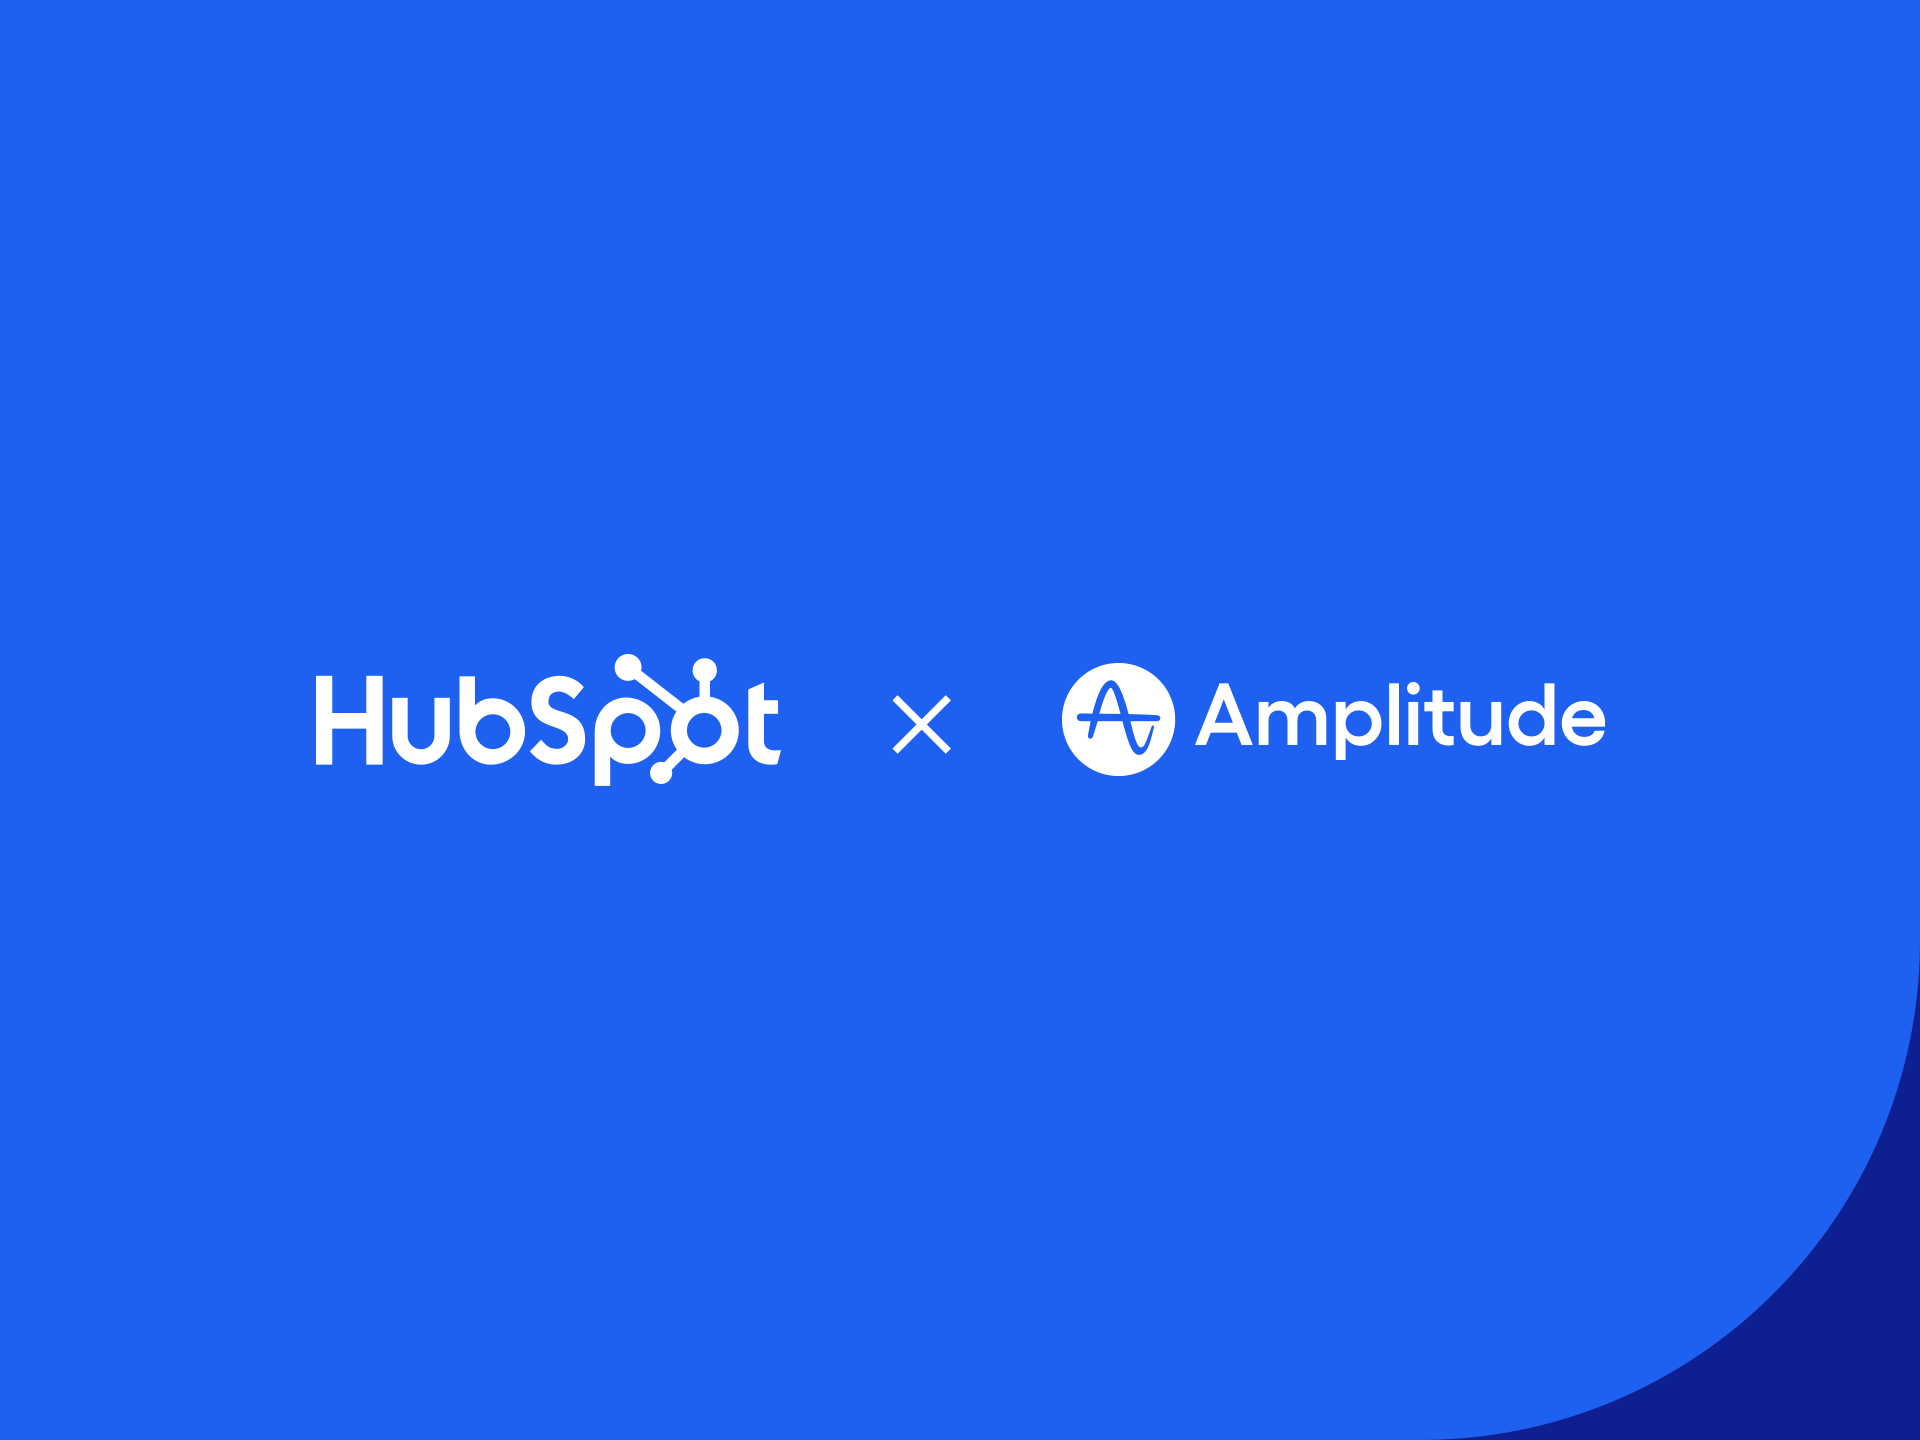 HubSpot and Amplitude logos